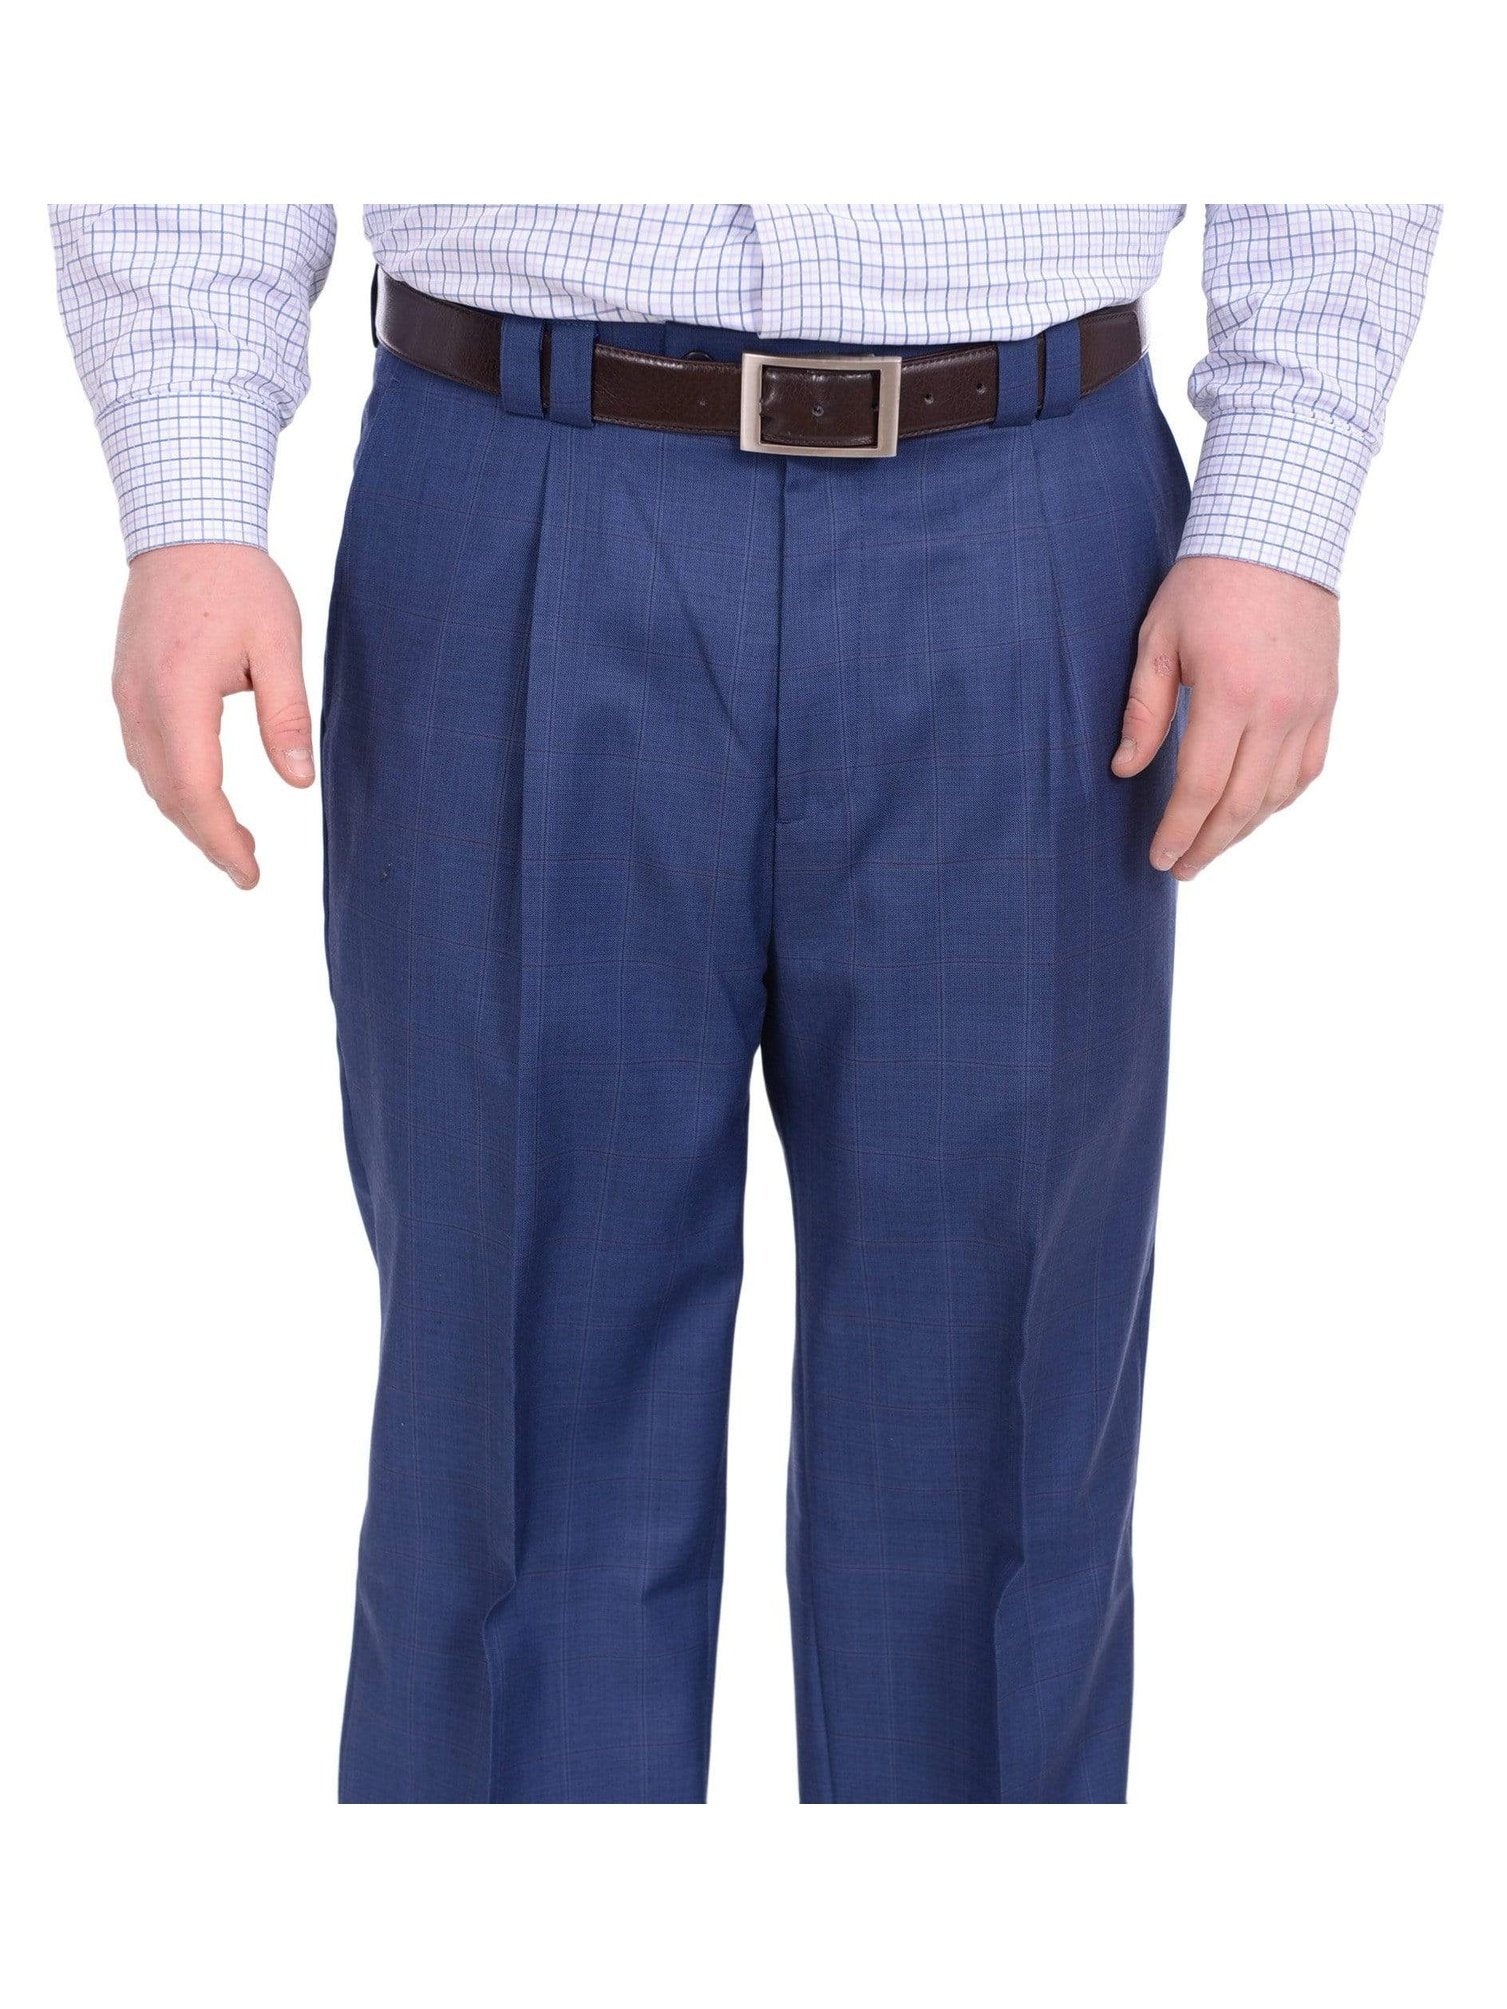 Shop Louis Raphael Blue 100% Wool Pants | The Suit Depot 32x30